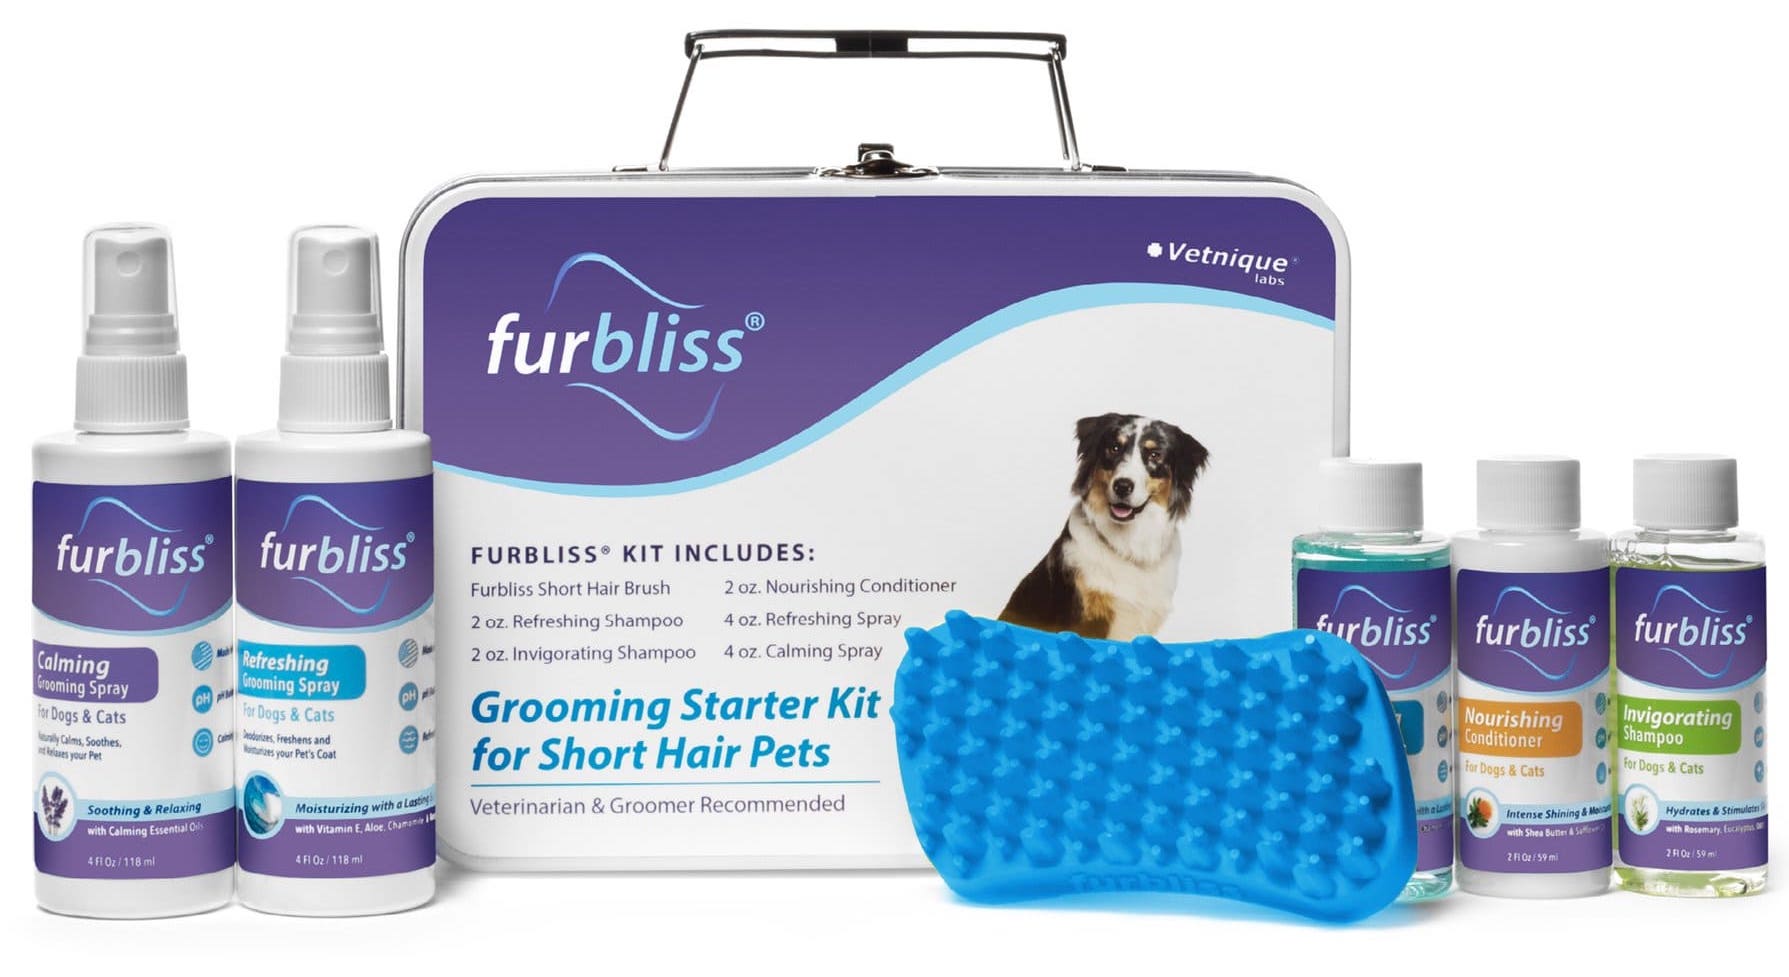 Furbliss Grooming & Bathing Kit